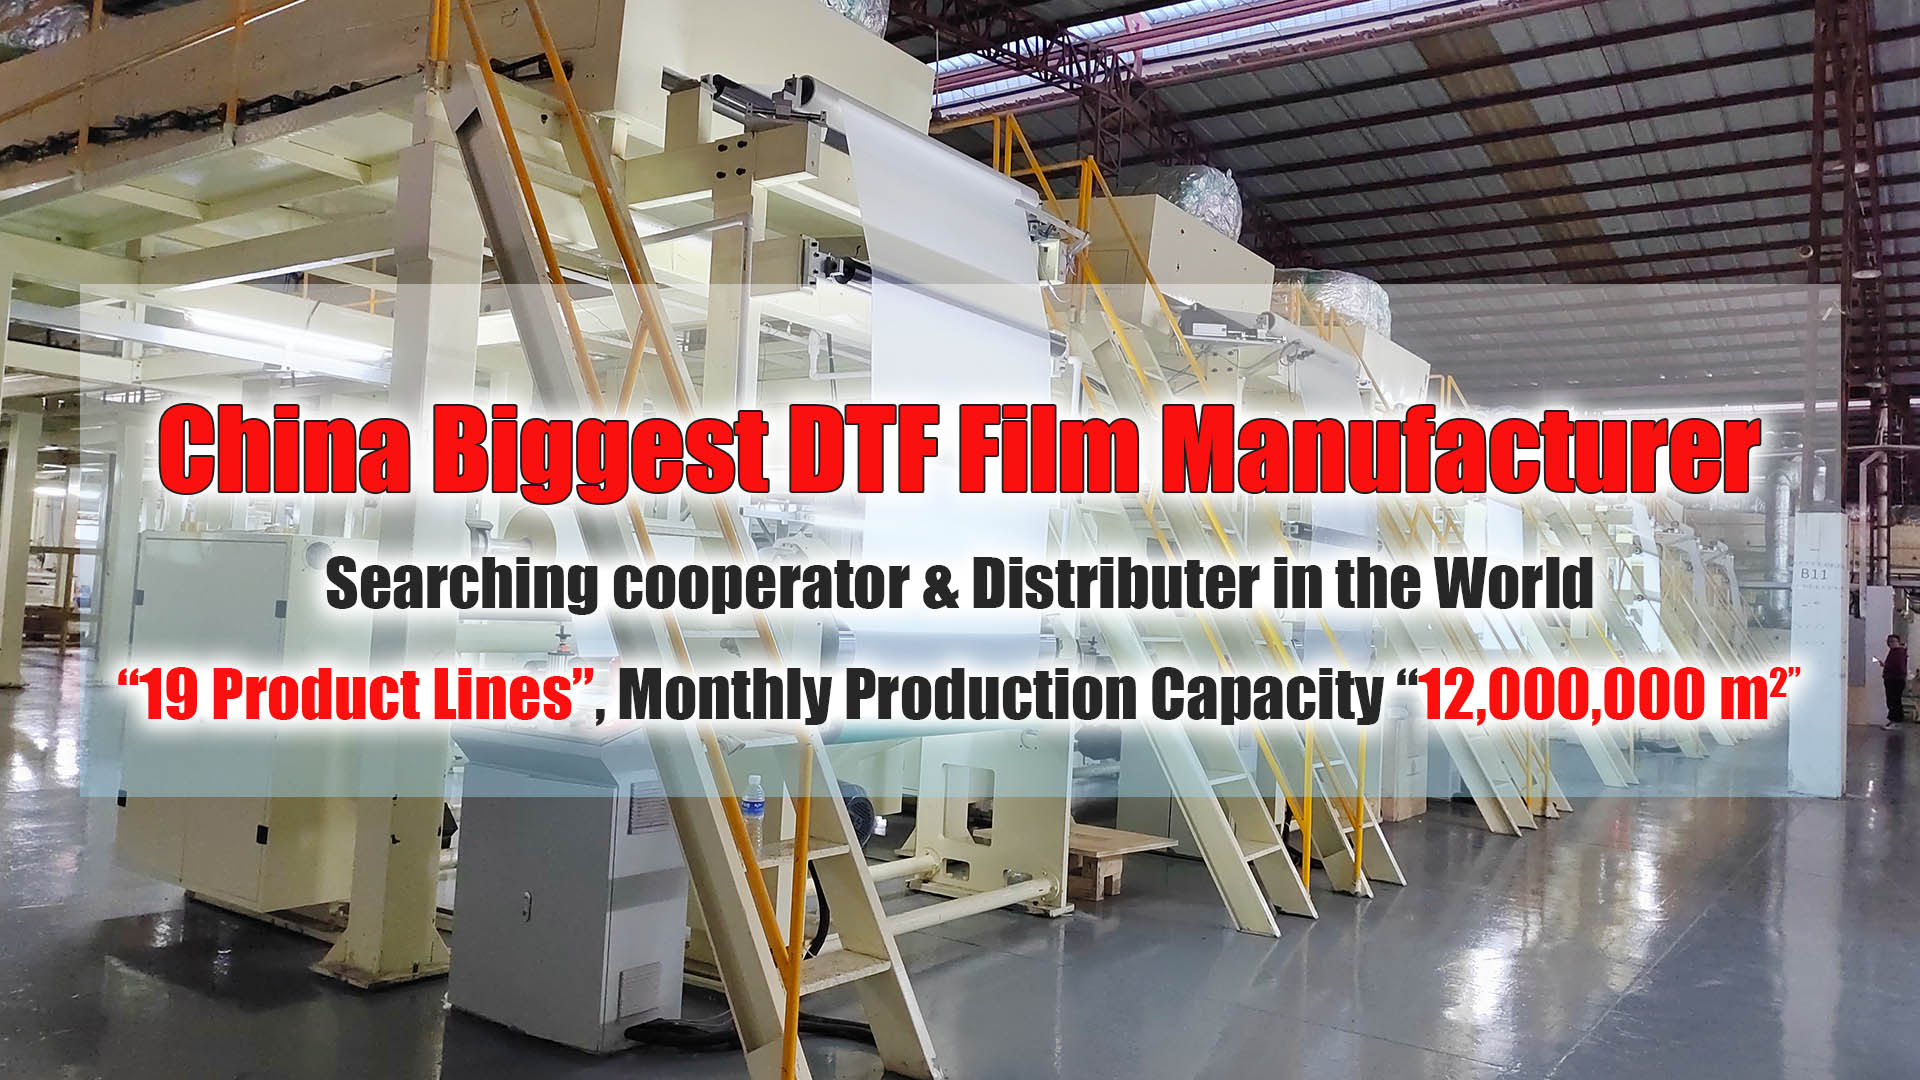 Biggest DTF Film Manufacturer